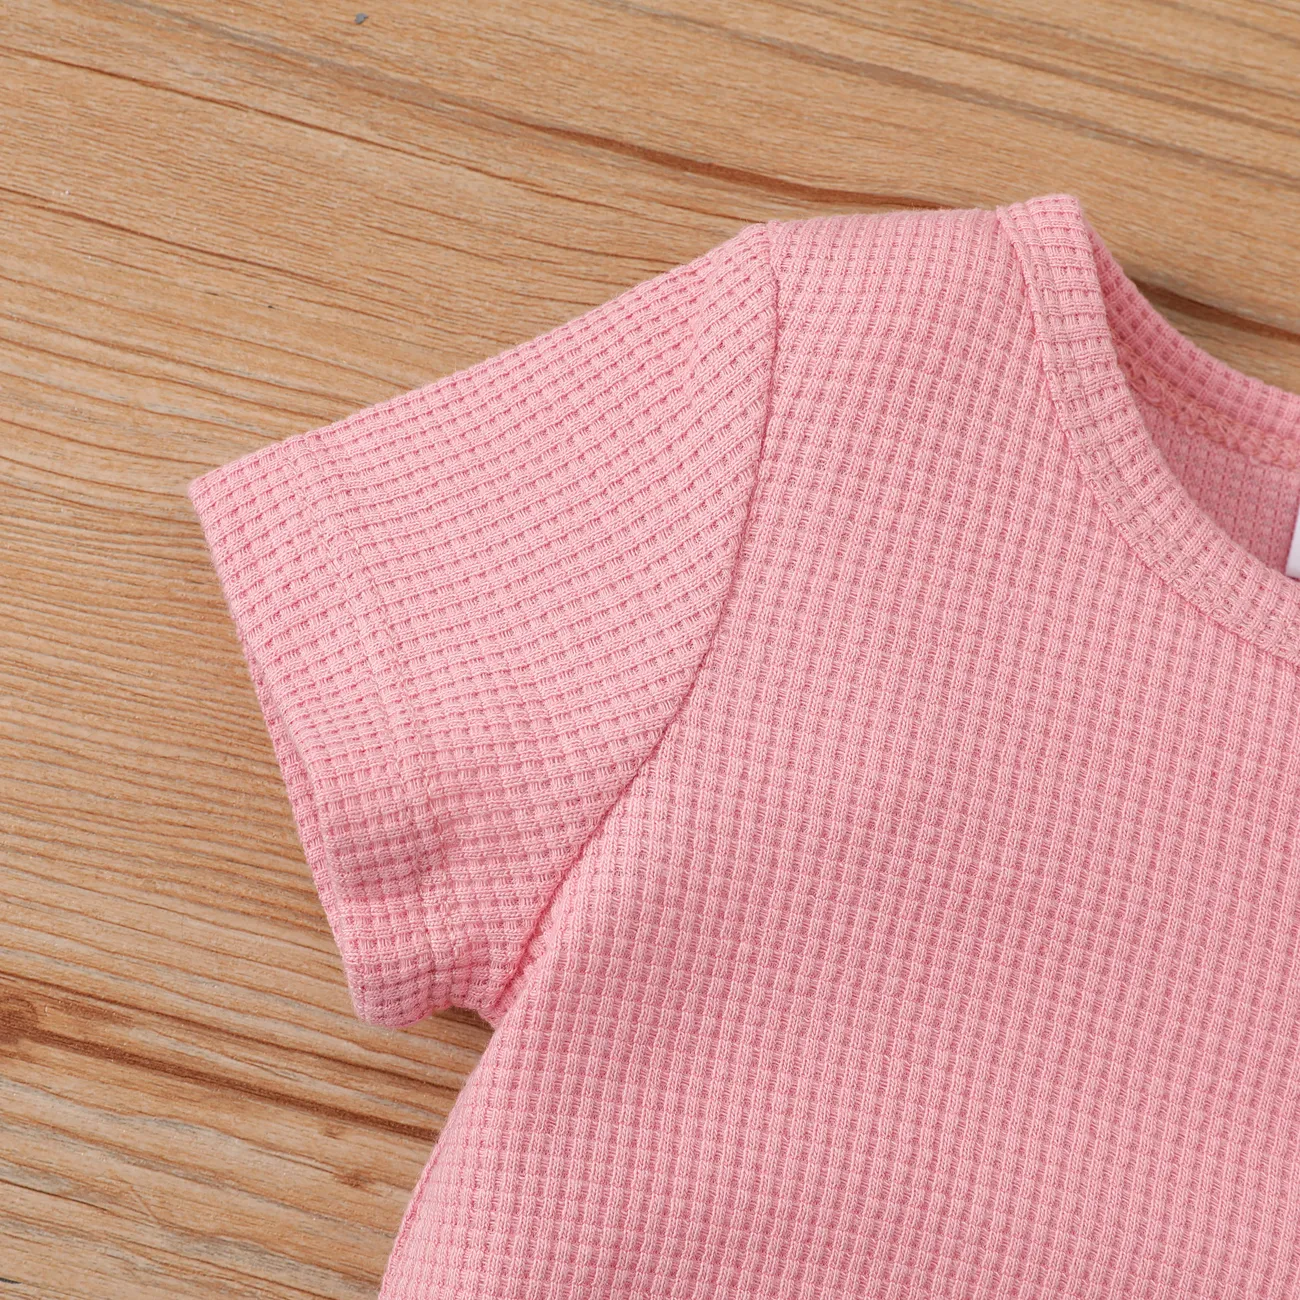 嬰兒/幼兒男孩/女孩 2 件套熊刺繡 T 恤和短褲套裝 粉色 big image 1